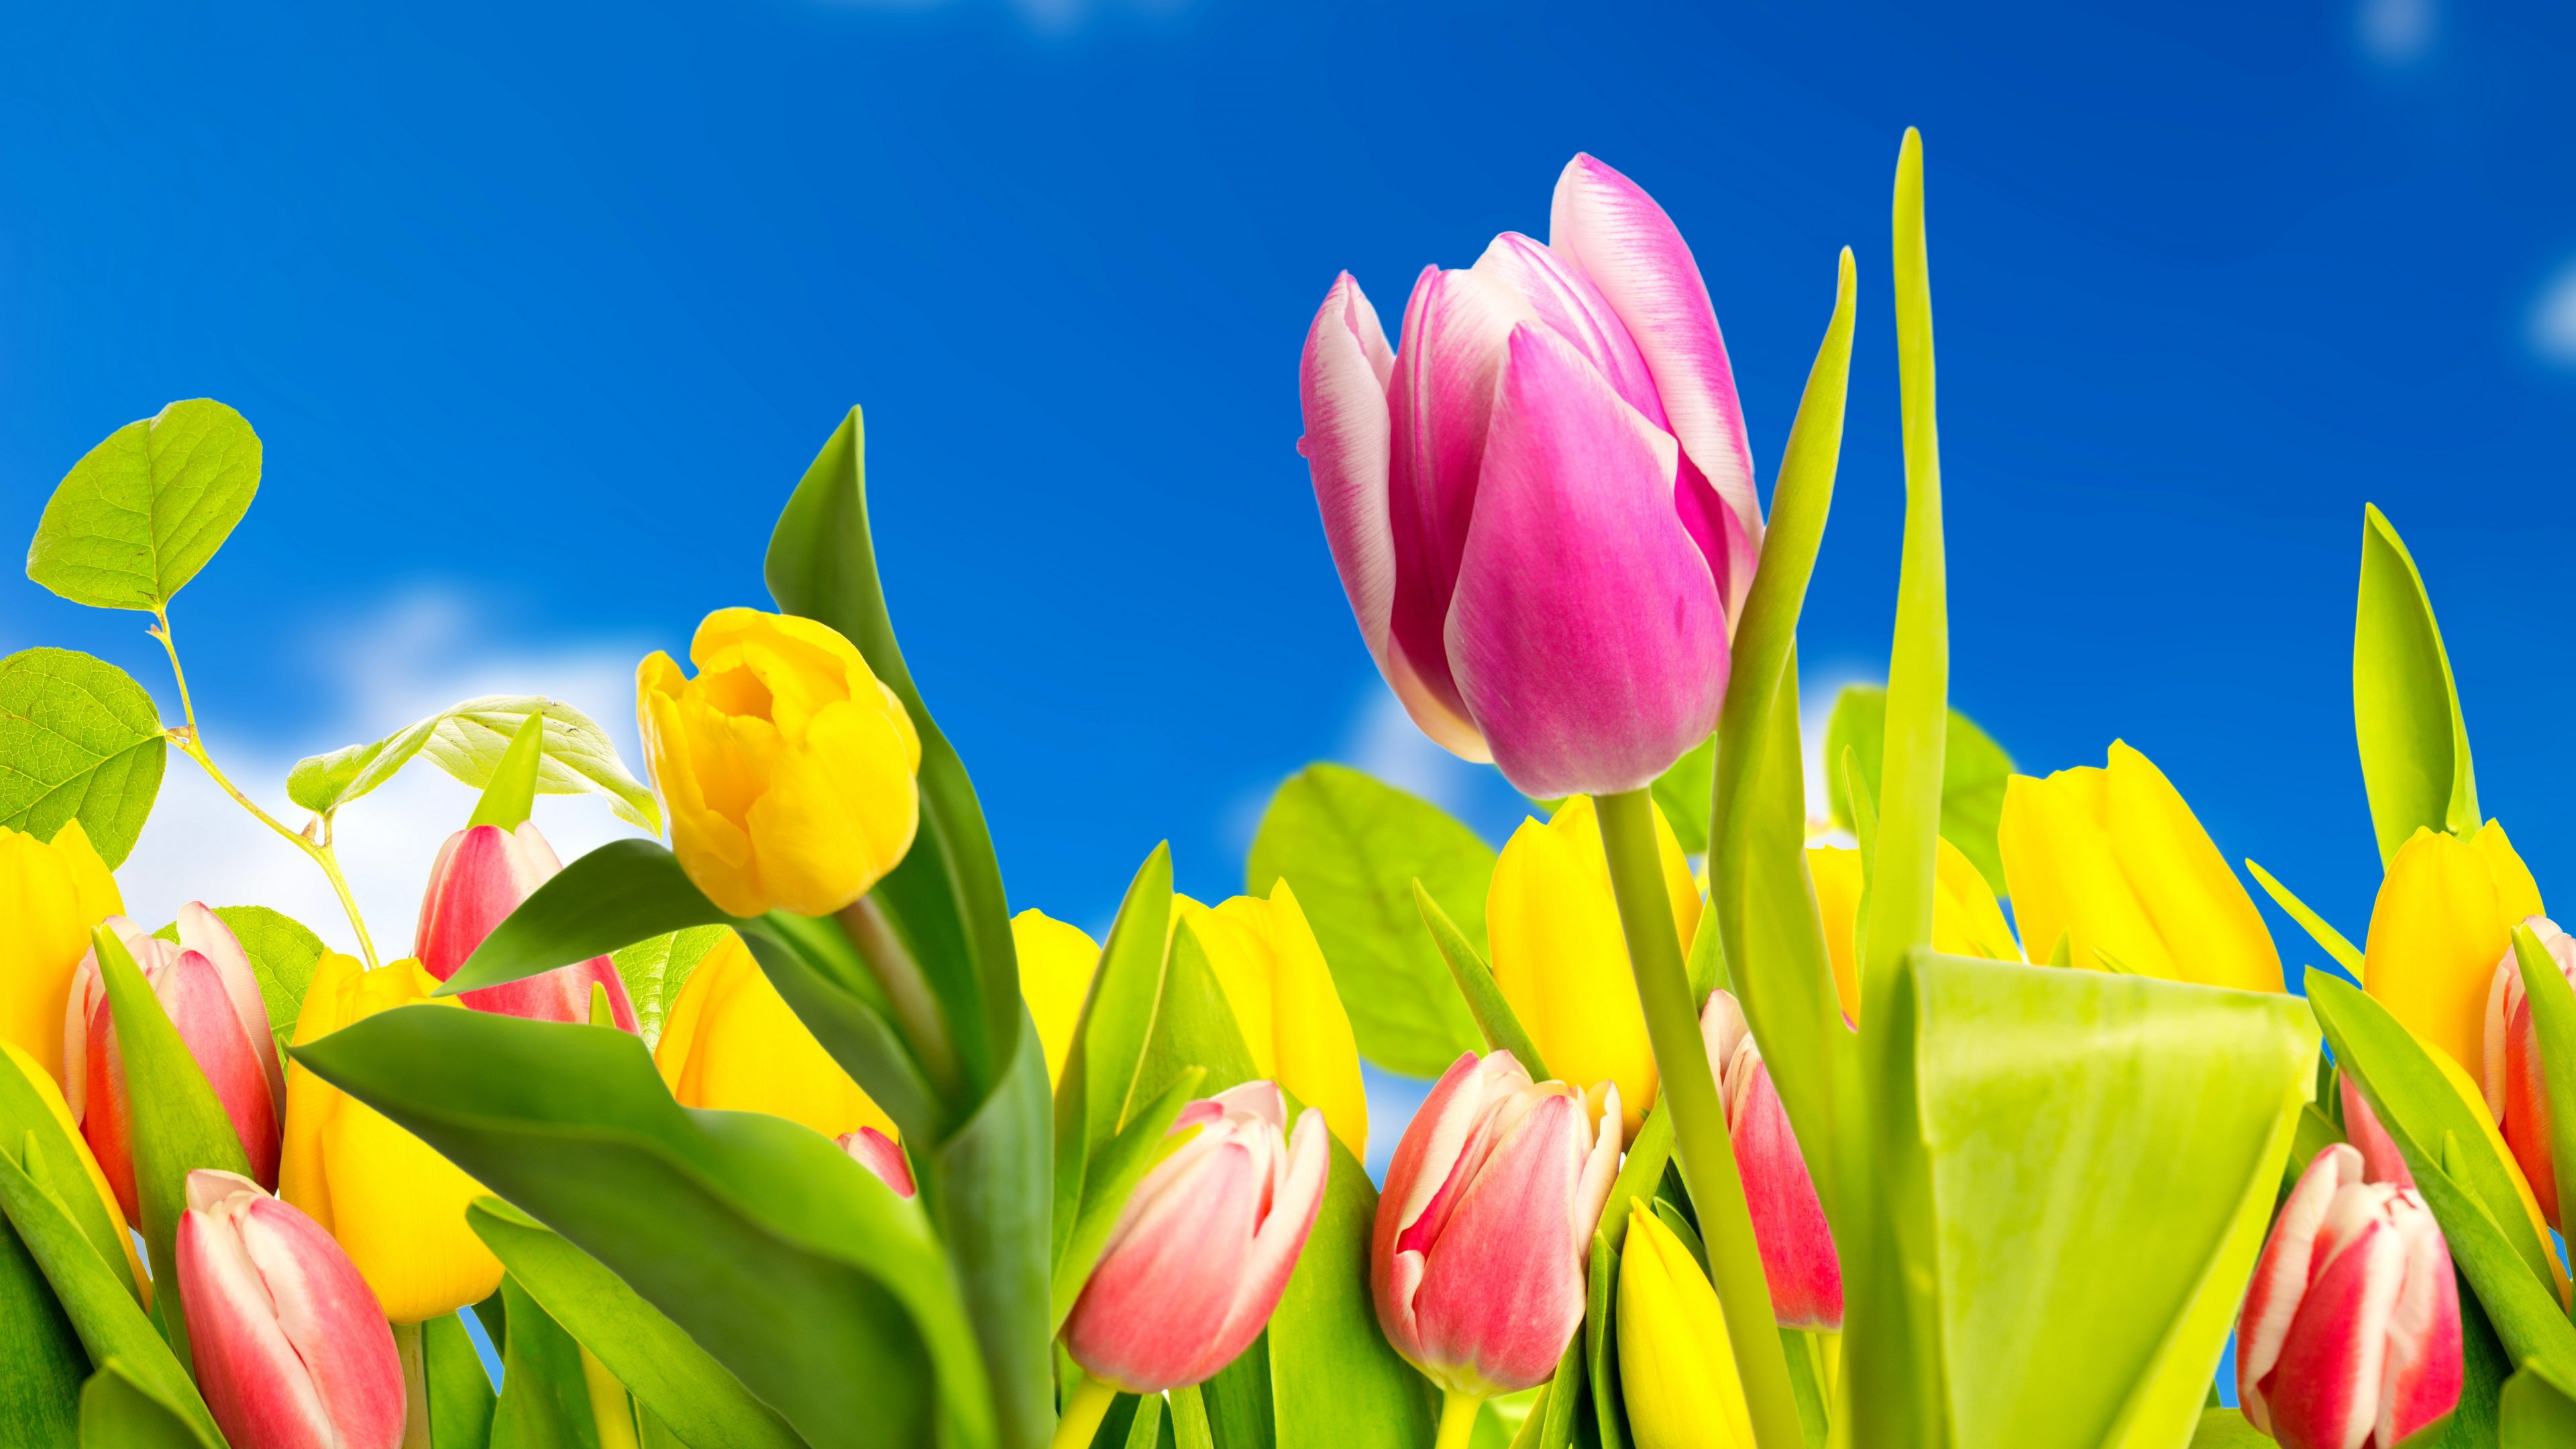 Скачать обои бесплатно Цветок, Красочный, Весна, Тюльпан, Желтый Цветок, Земля/природа, Розовый Цветок, Флауэрсы картинка на рабочий стол ПК